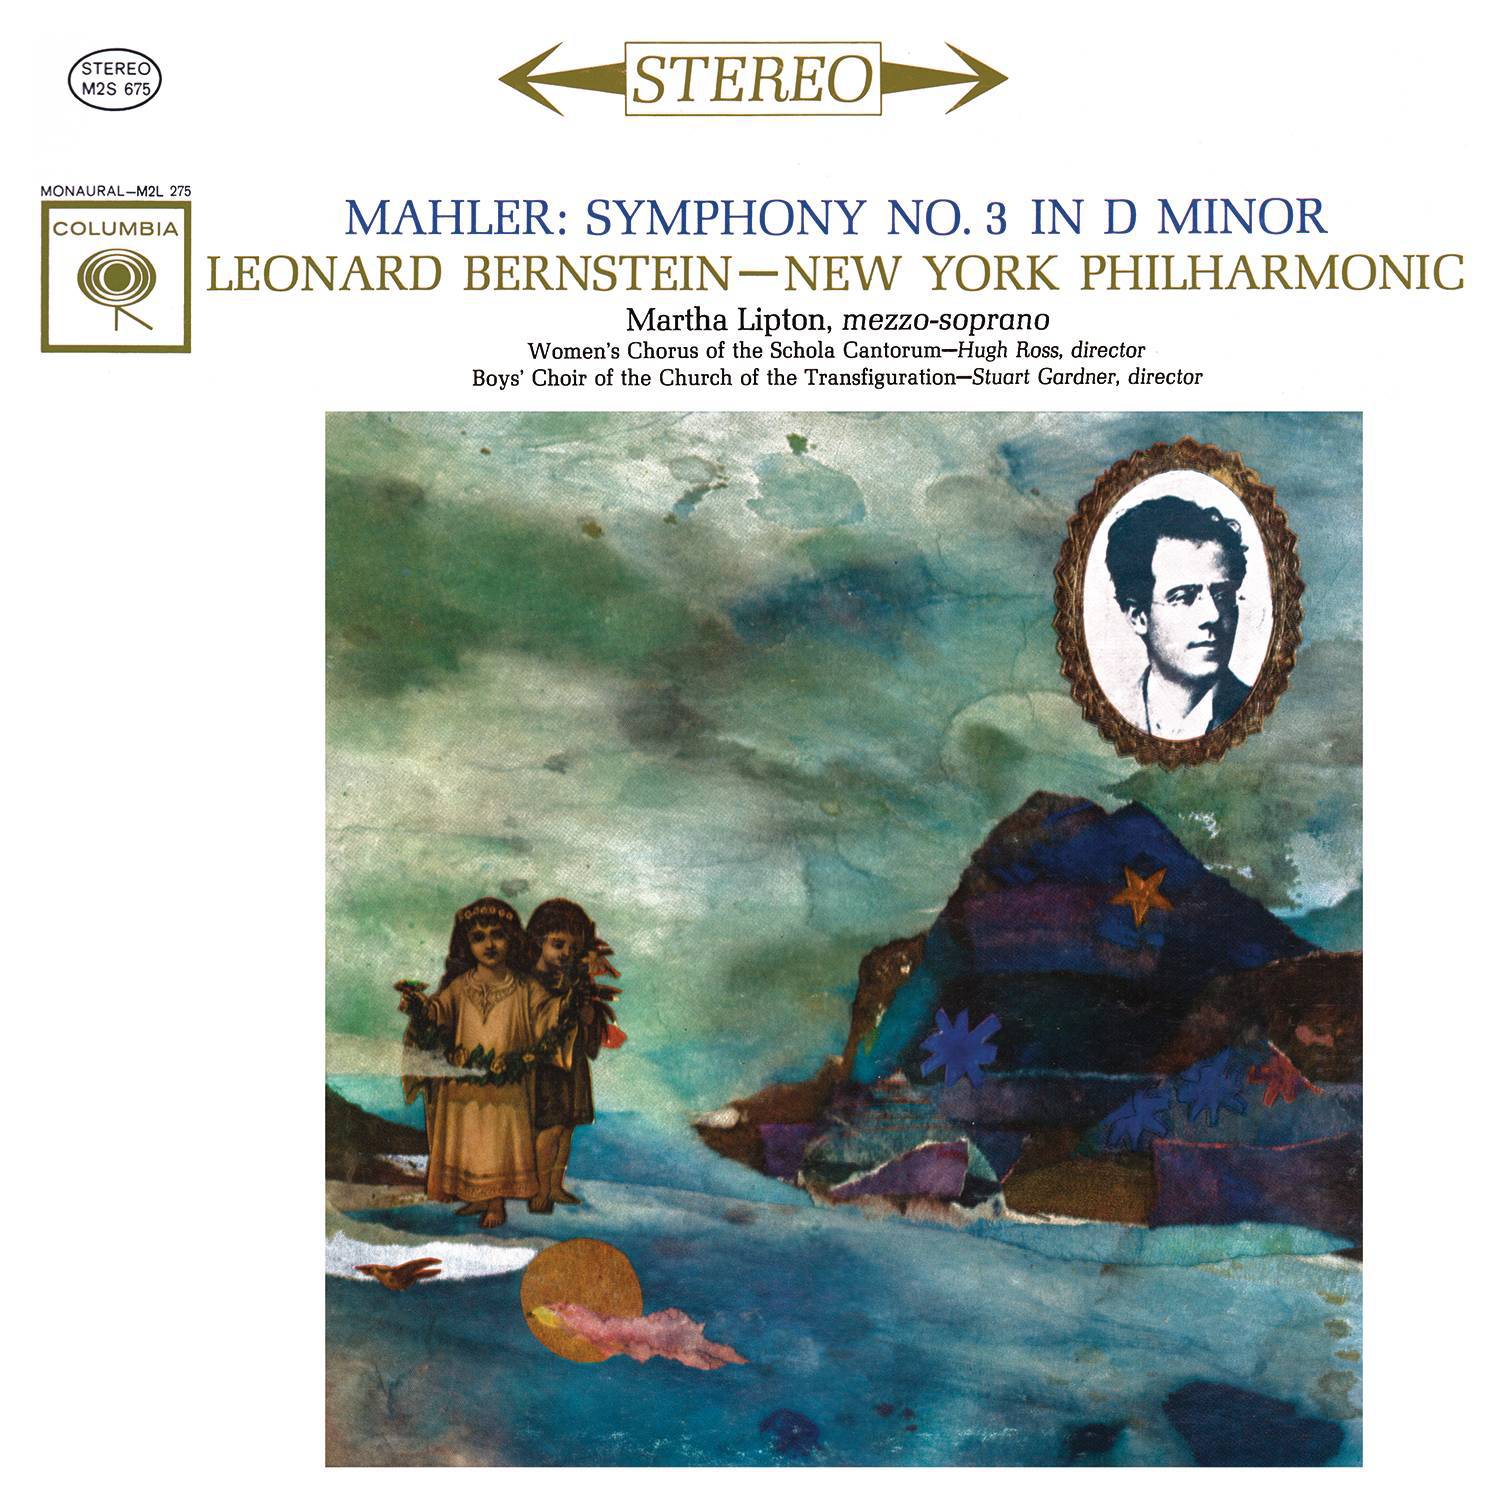 Mahler: Symphony No. 3 in D Minor专辑